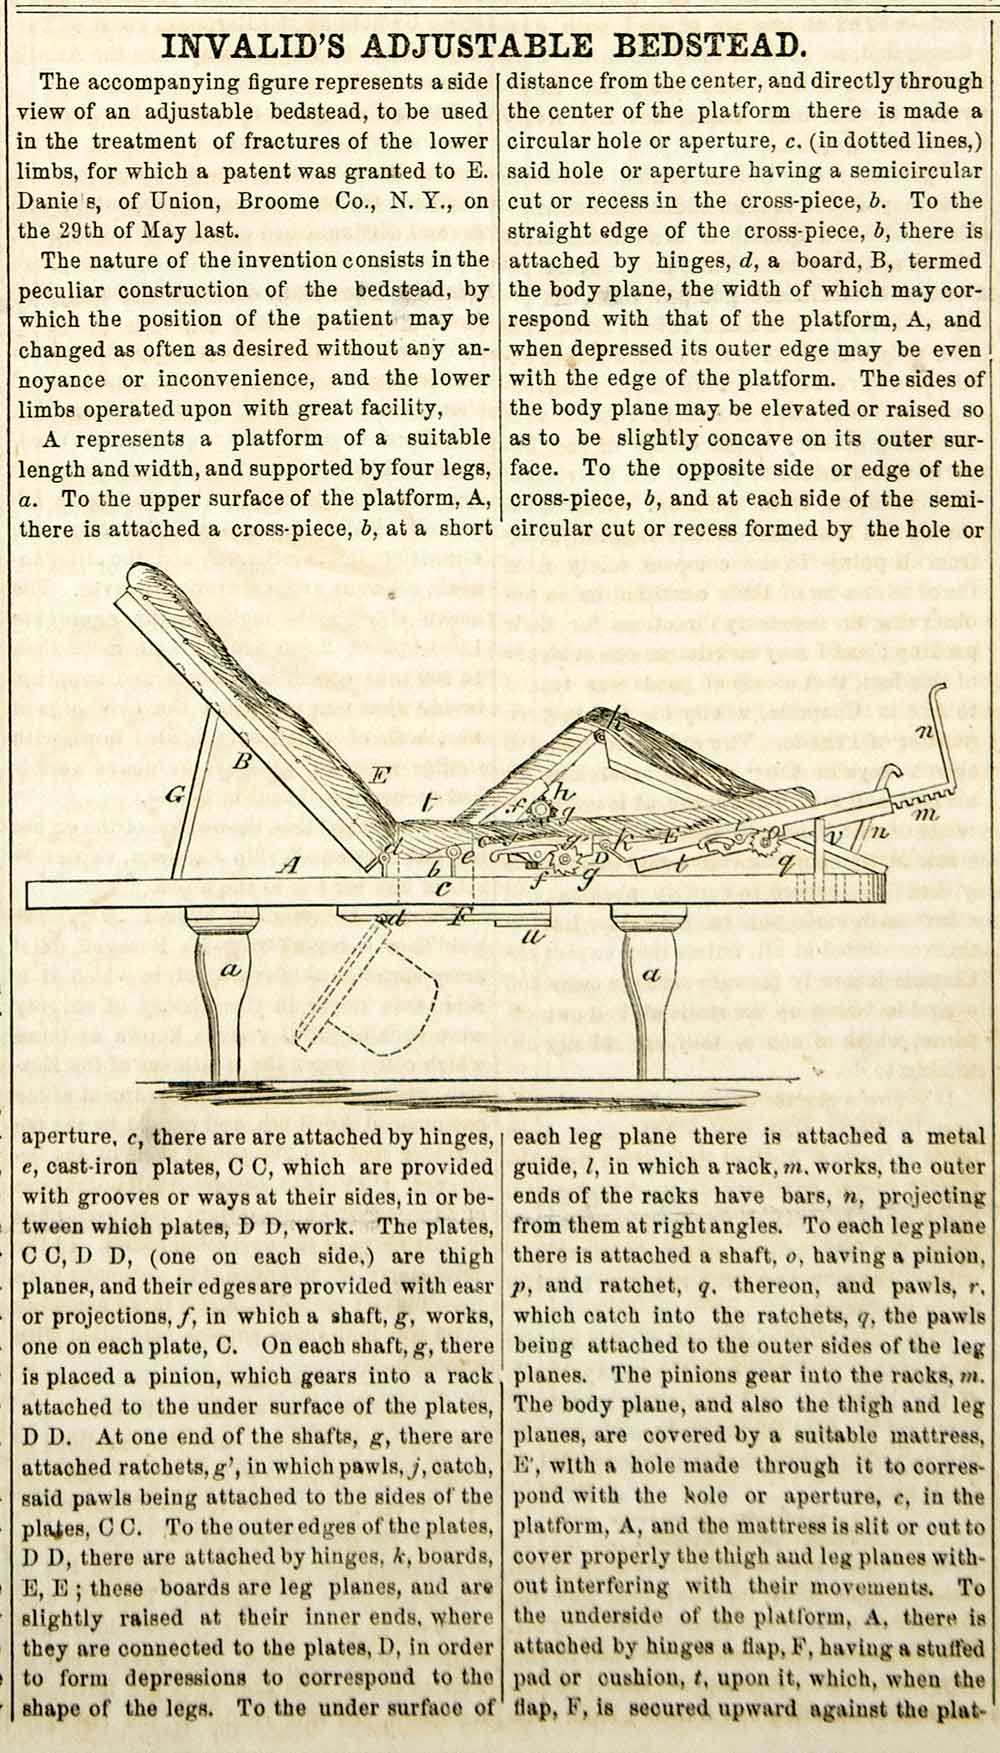 1855 Wood Engraving Antique Hospital Bed Adjustable Medical Invention Sick YSA2